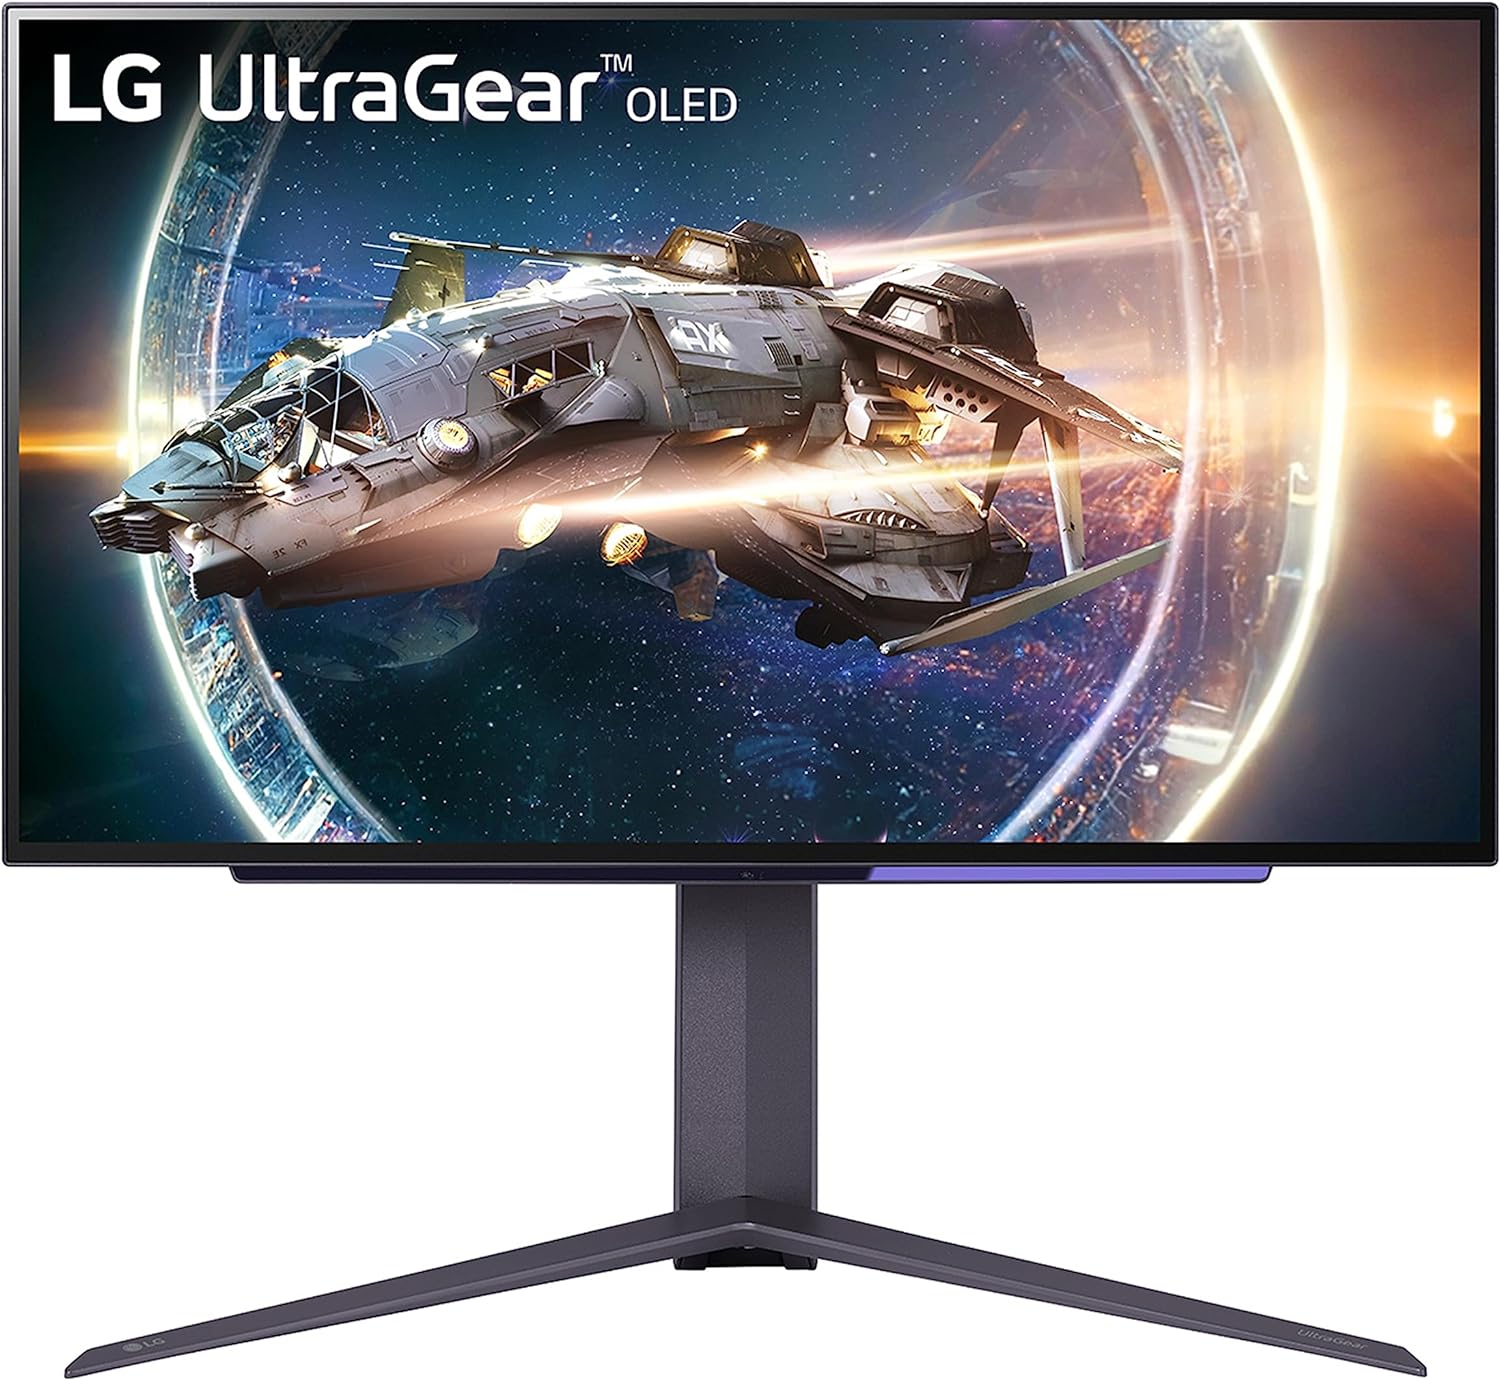 LG UltraGear OLED product photo.